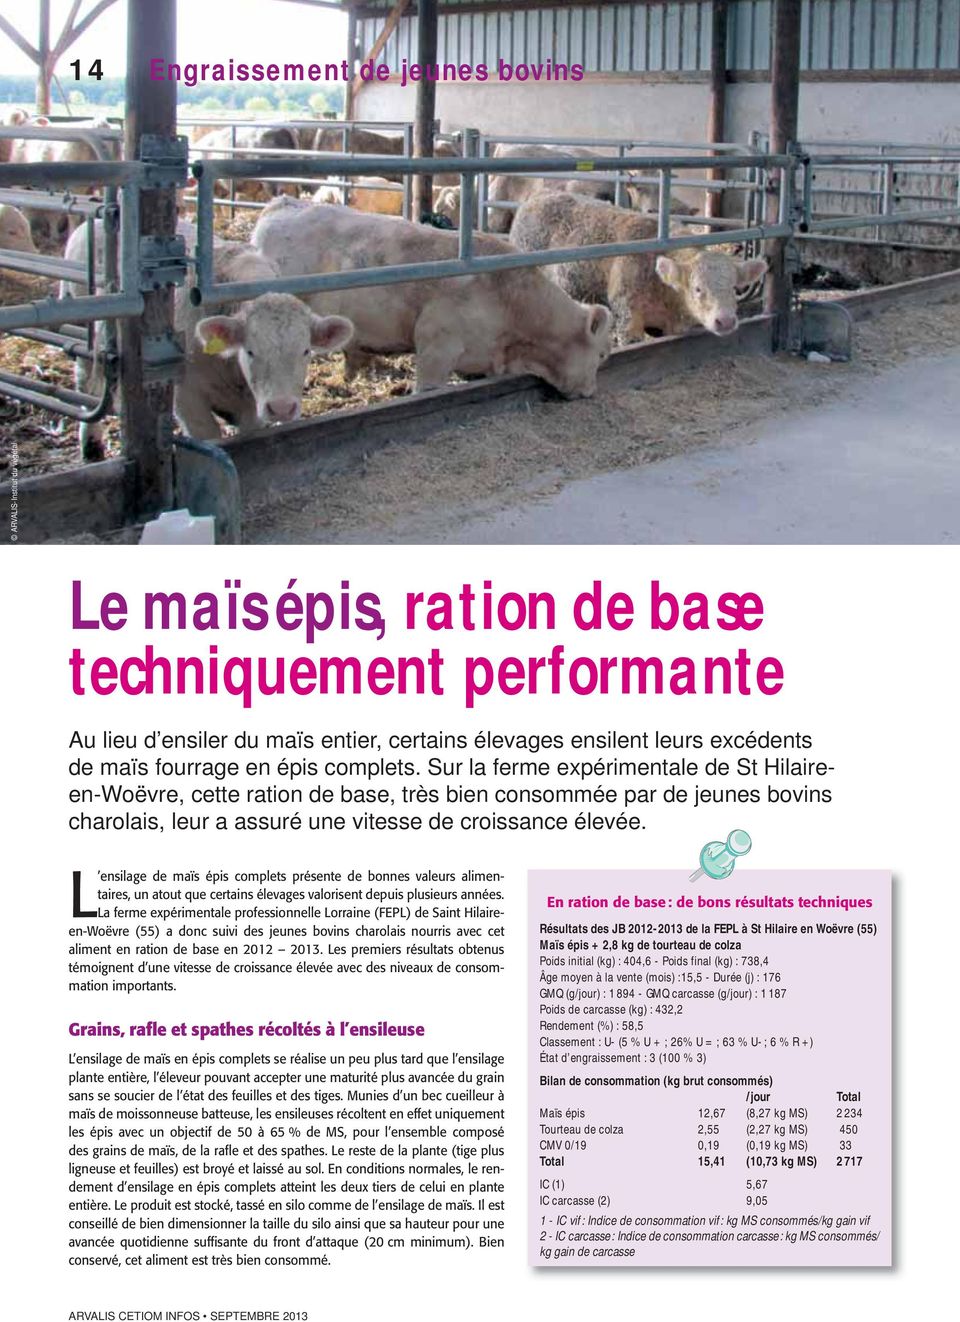 Sur la ferme expérimentale de St Hilaireen-Woëvre, cette ration de base, très bien consommée par de jeunes bovins charolais, leur a assuré une vitesse de croissance élevée.